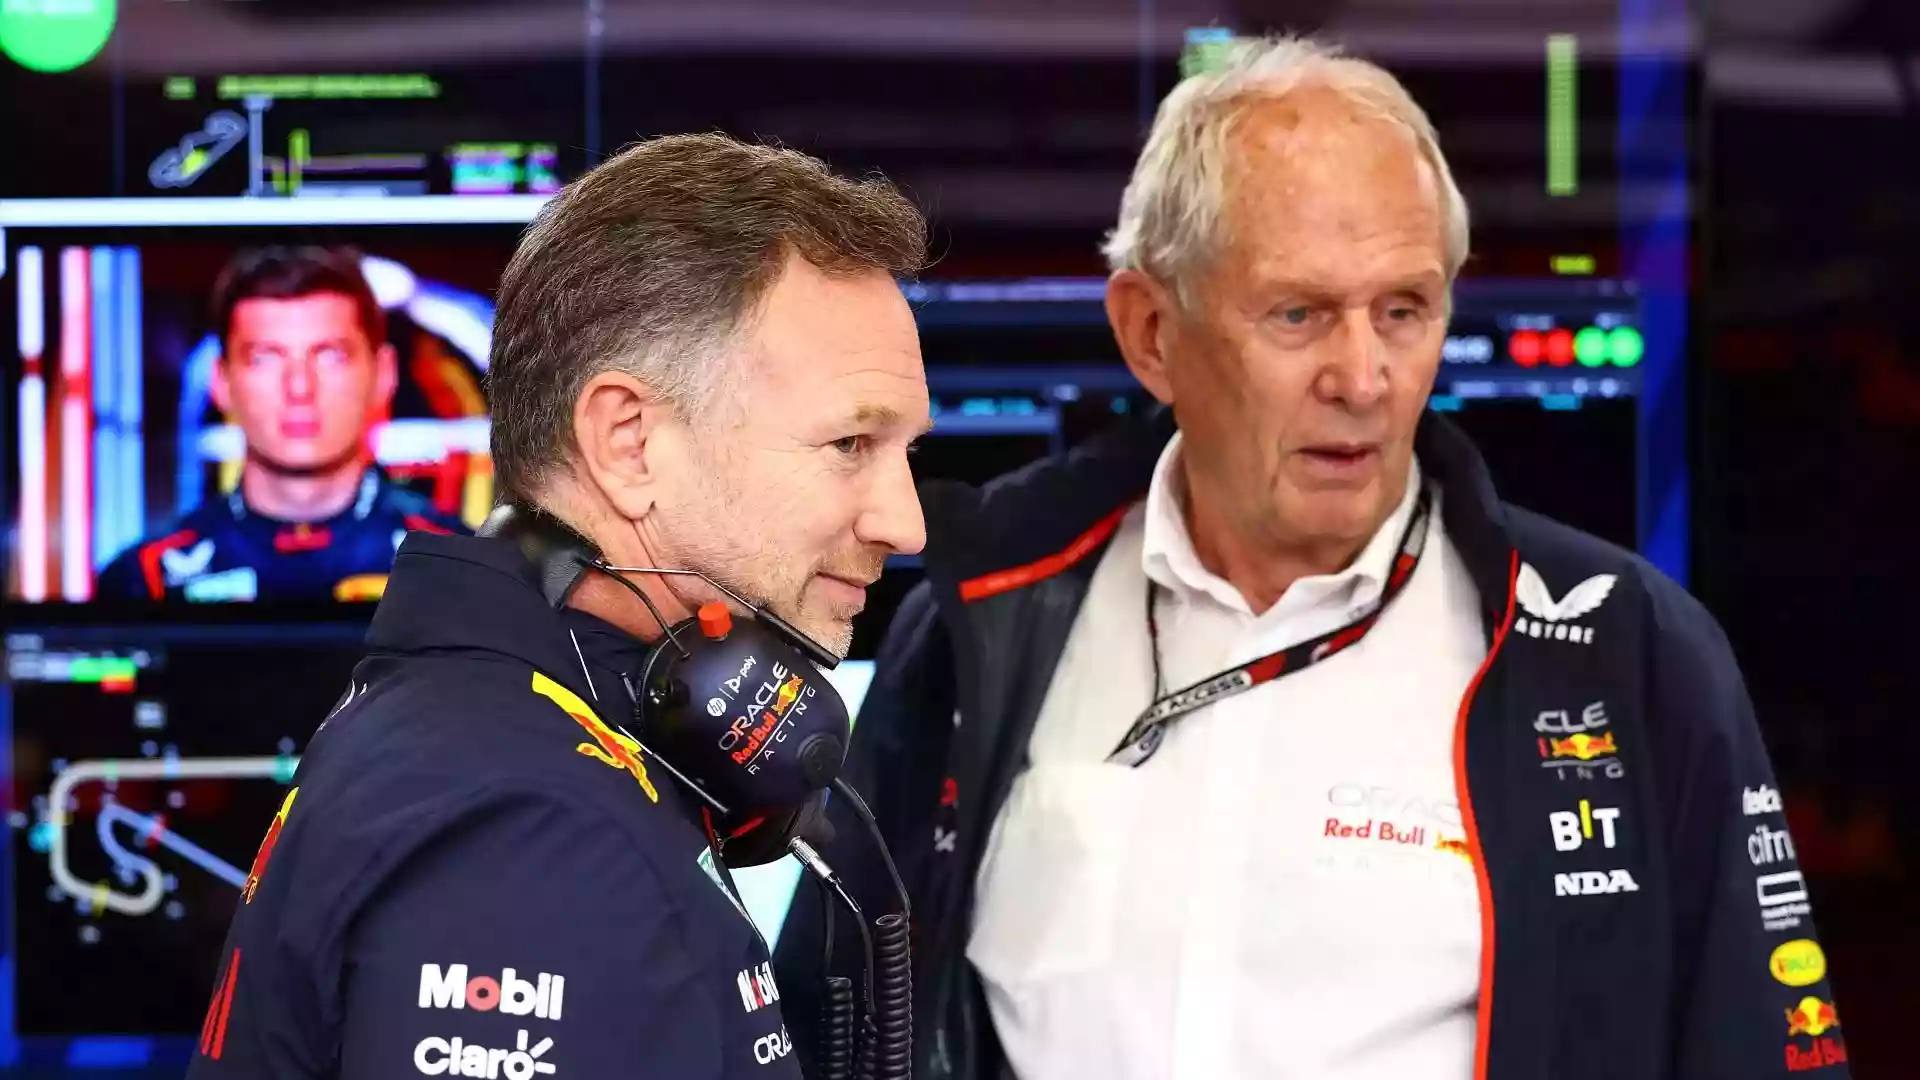 Советник команды «Red Bull», Хельмут Марко, прокомментировал влияние внутреннего расследования, связанного с Кристианом Хорнером, на  предсезонyю подготовку команды.